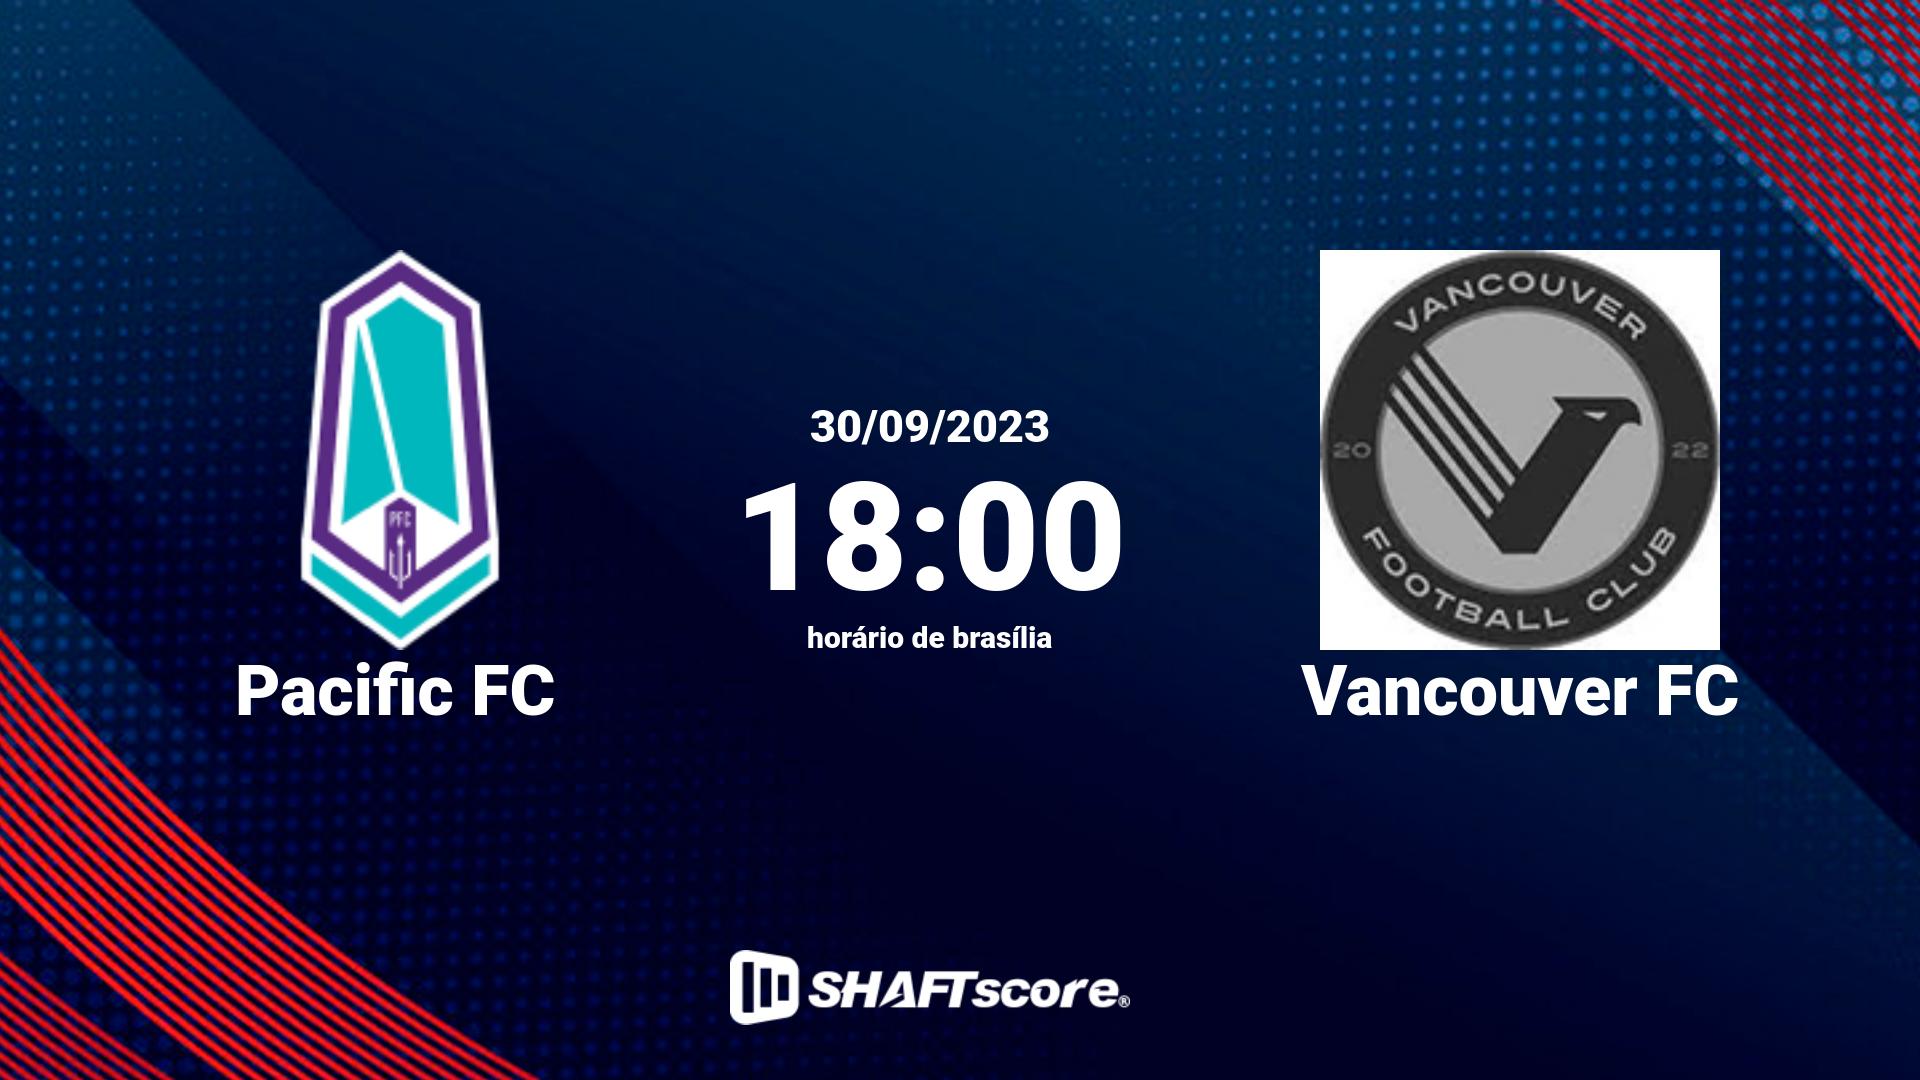 Estatísticas do jogo Pacific FC vs Vancouver FC 30.09 18:00